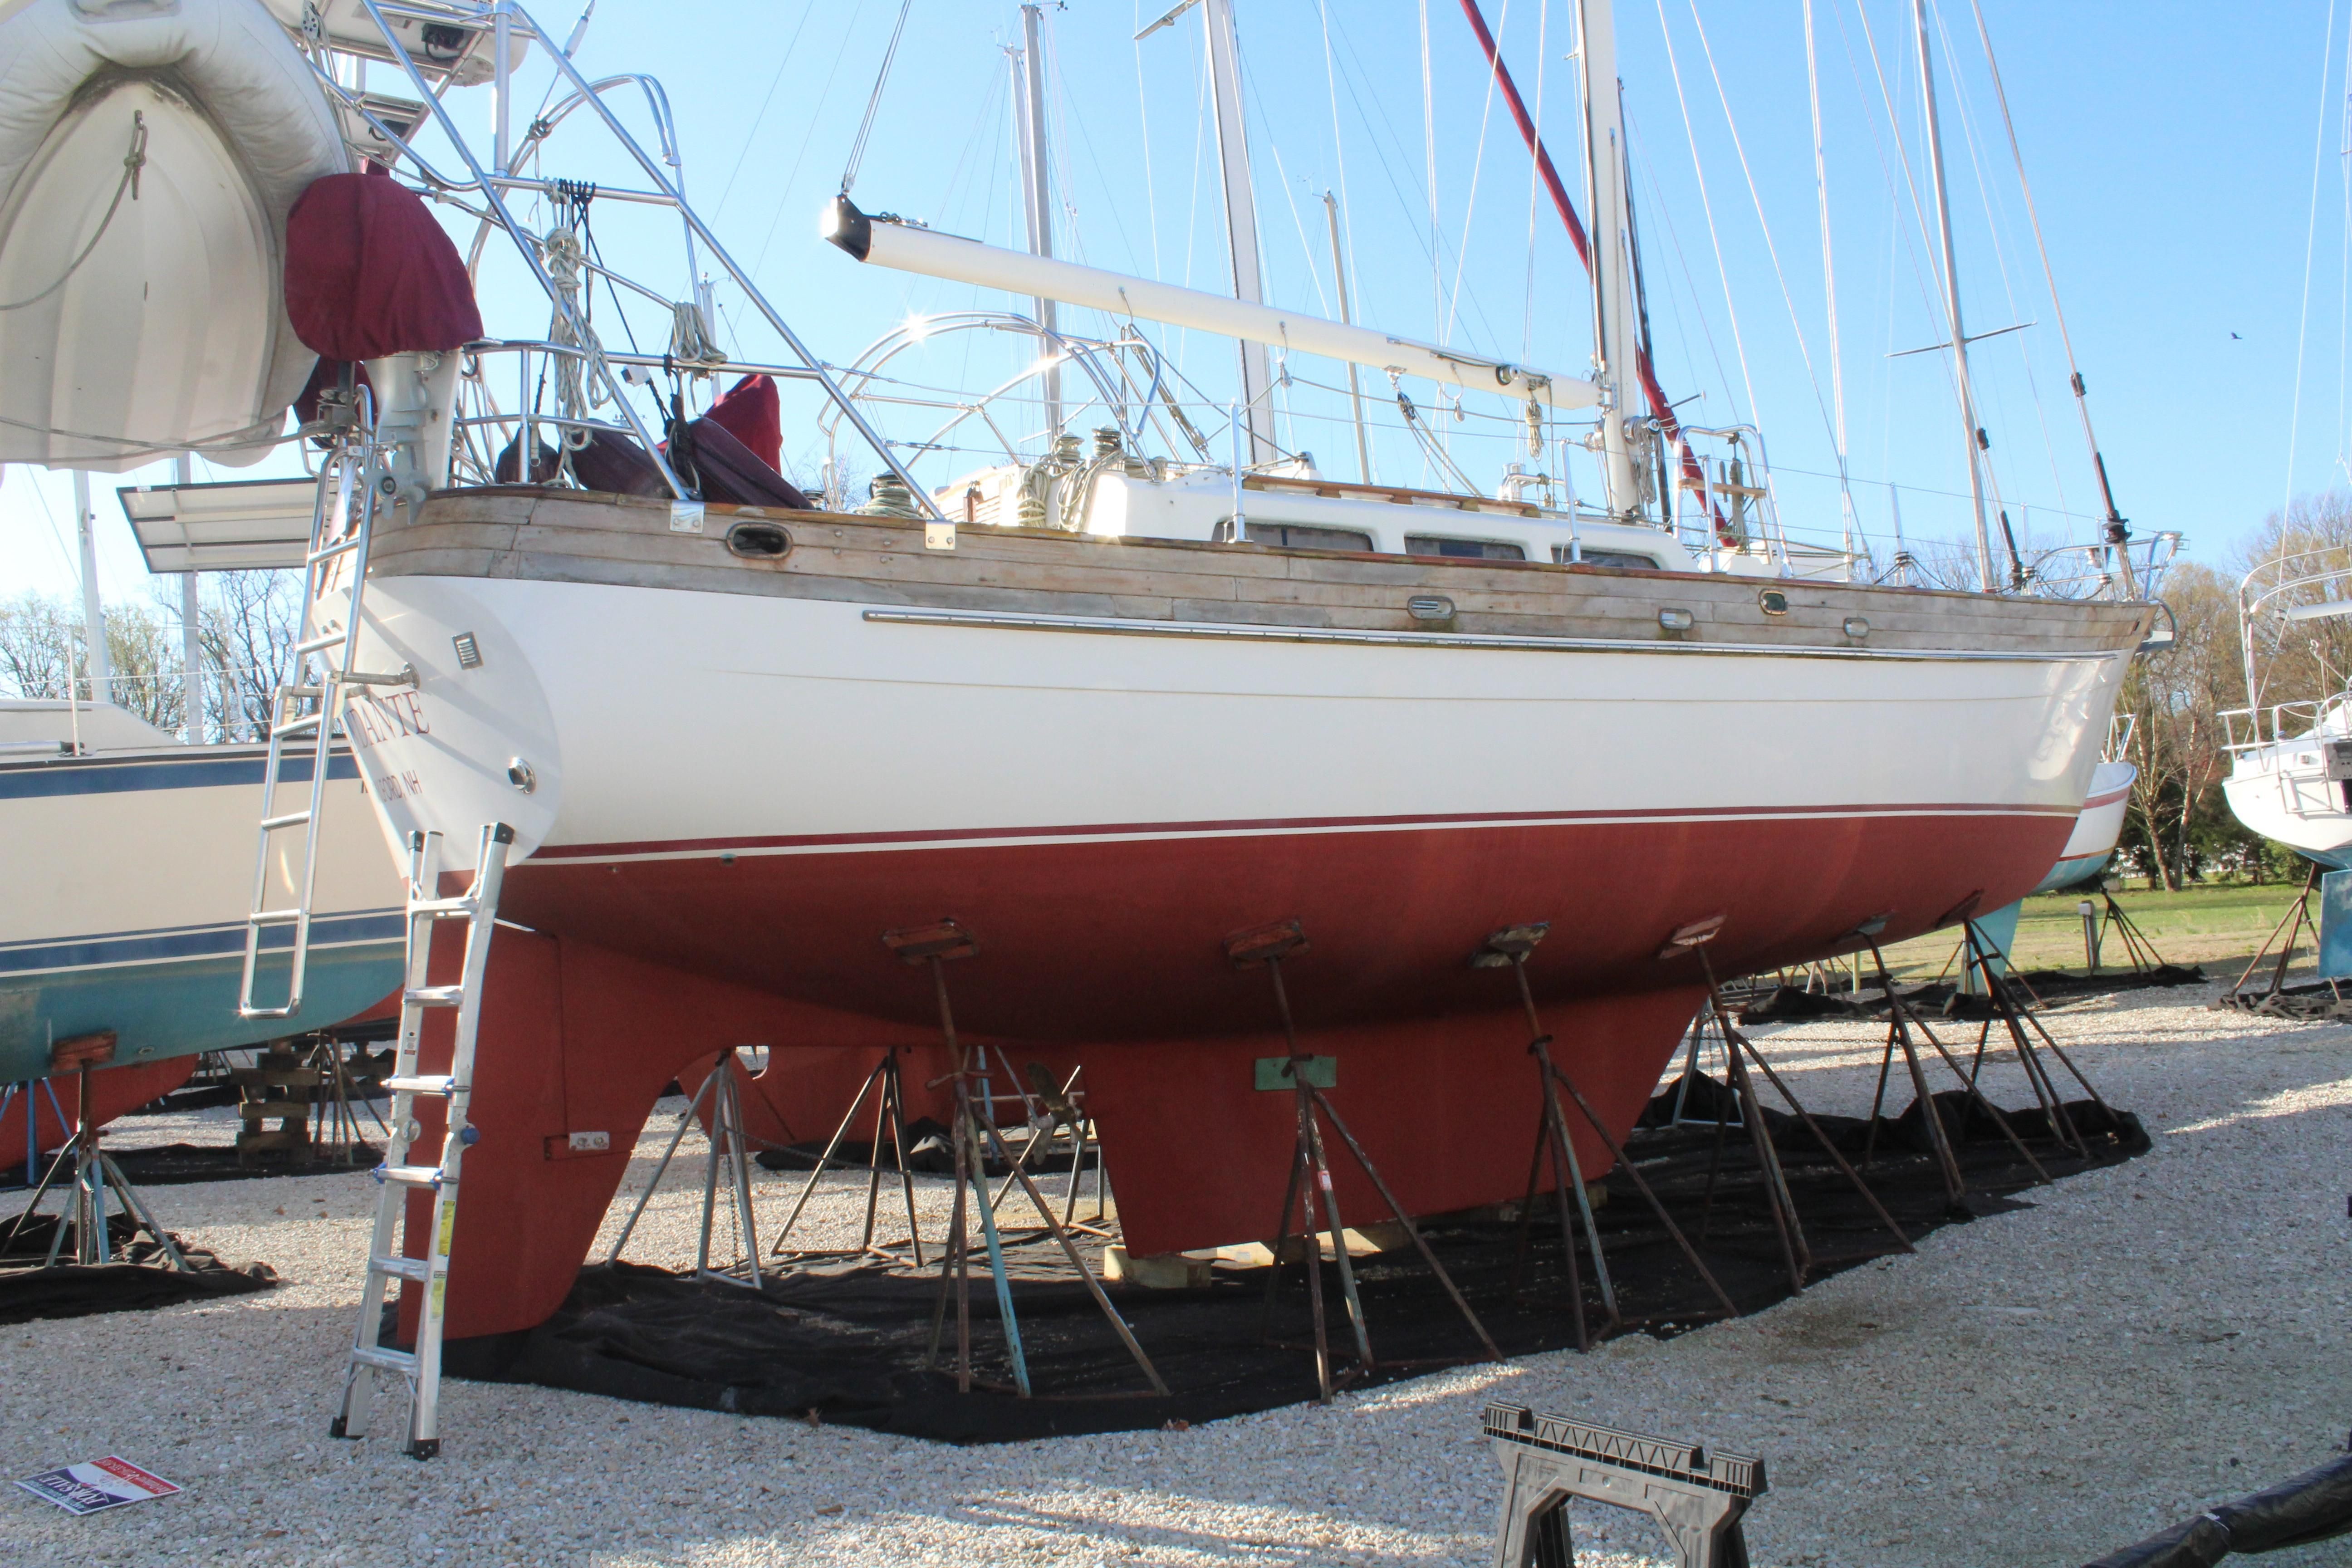 43 foot sailboat